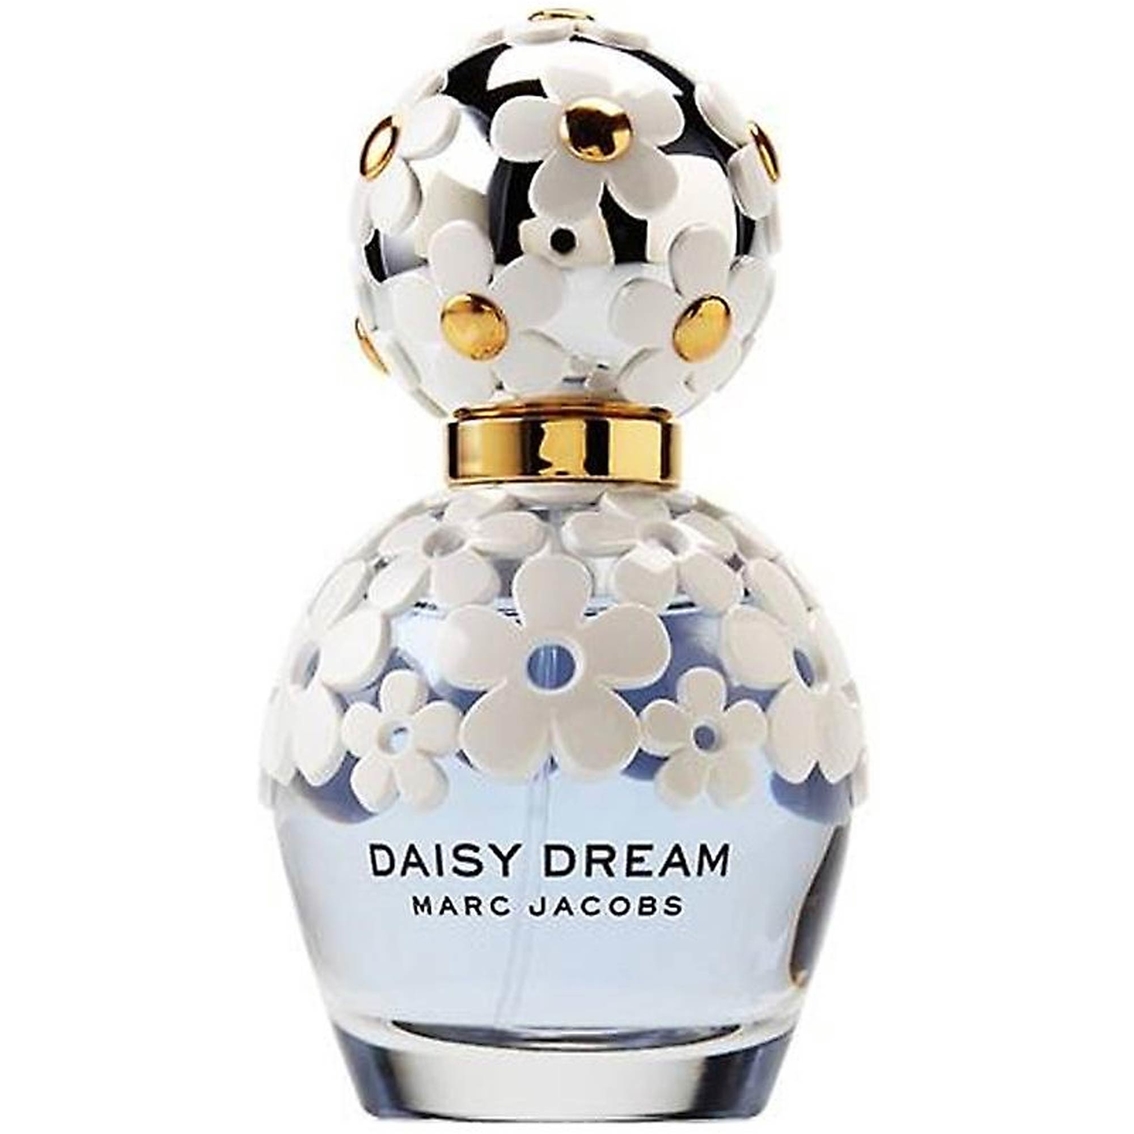 Marc Jacobs Daisy Dream Eau De Toilette | Gifts Sets For Her | Beauty ...